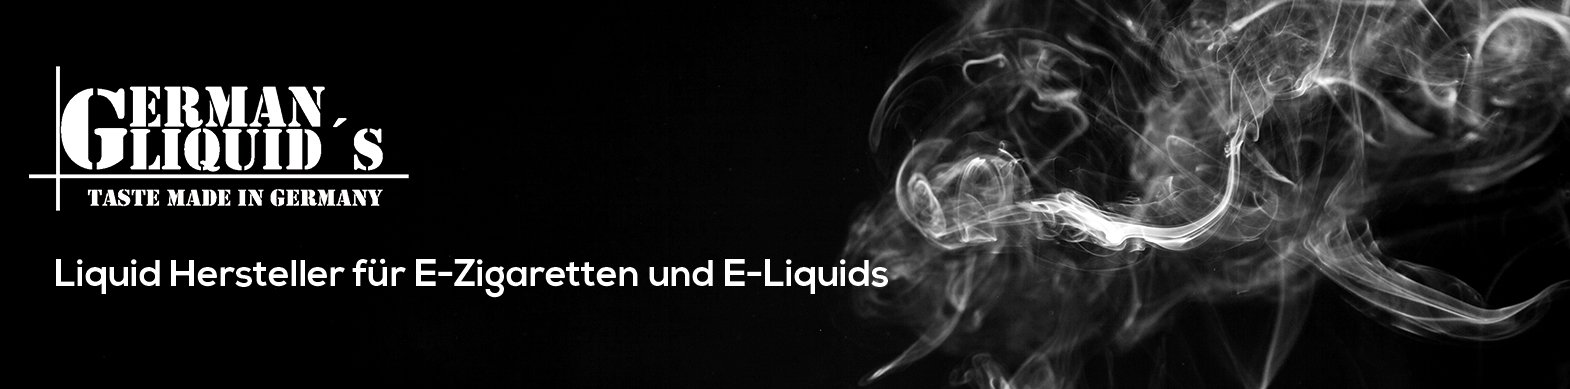 Germanliquids-Slider-Webseite-new